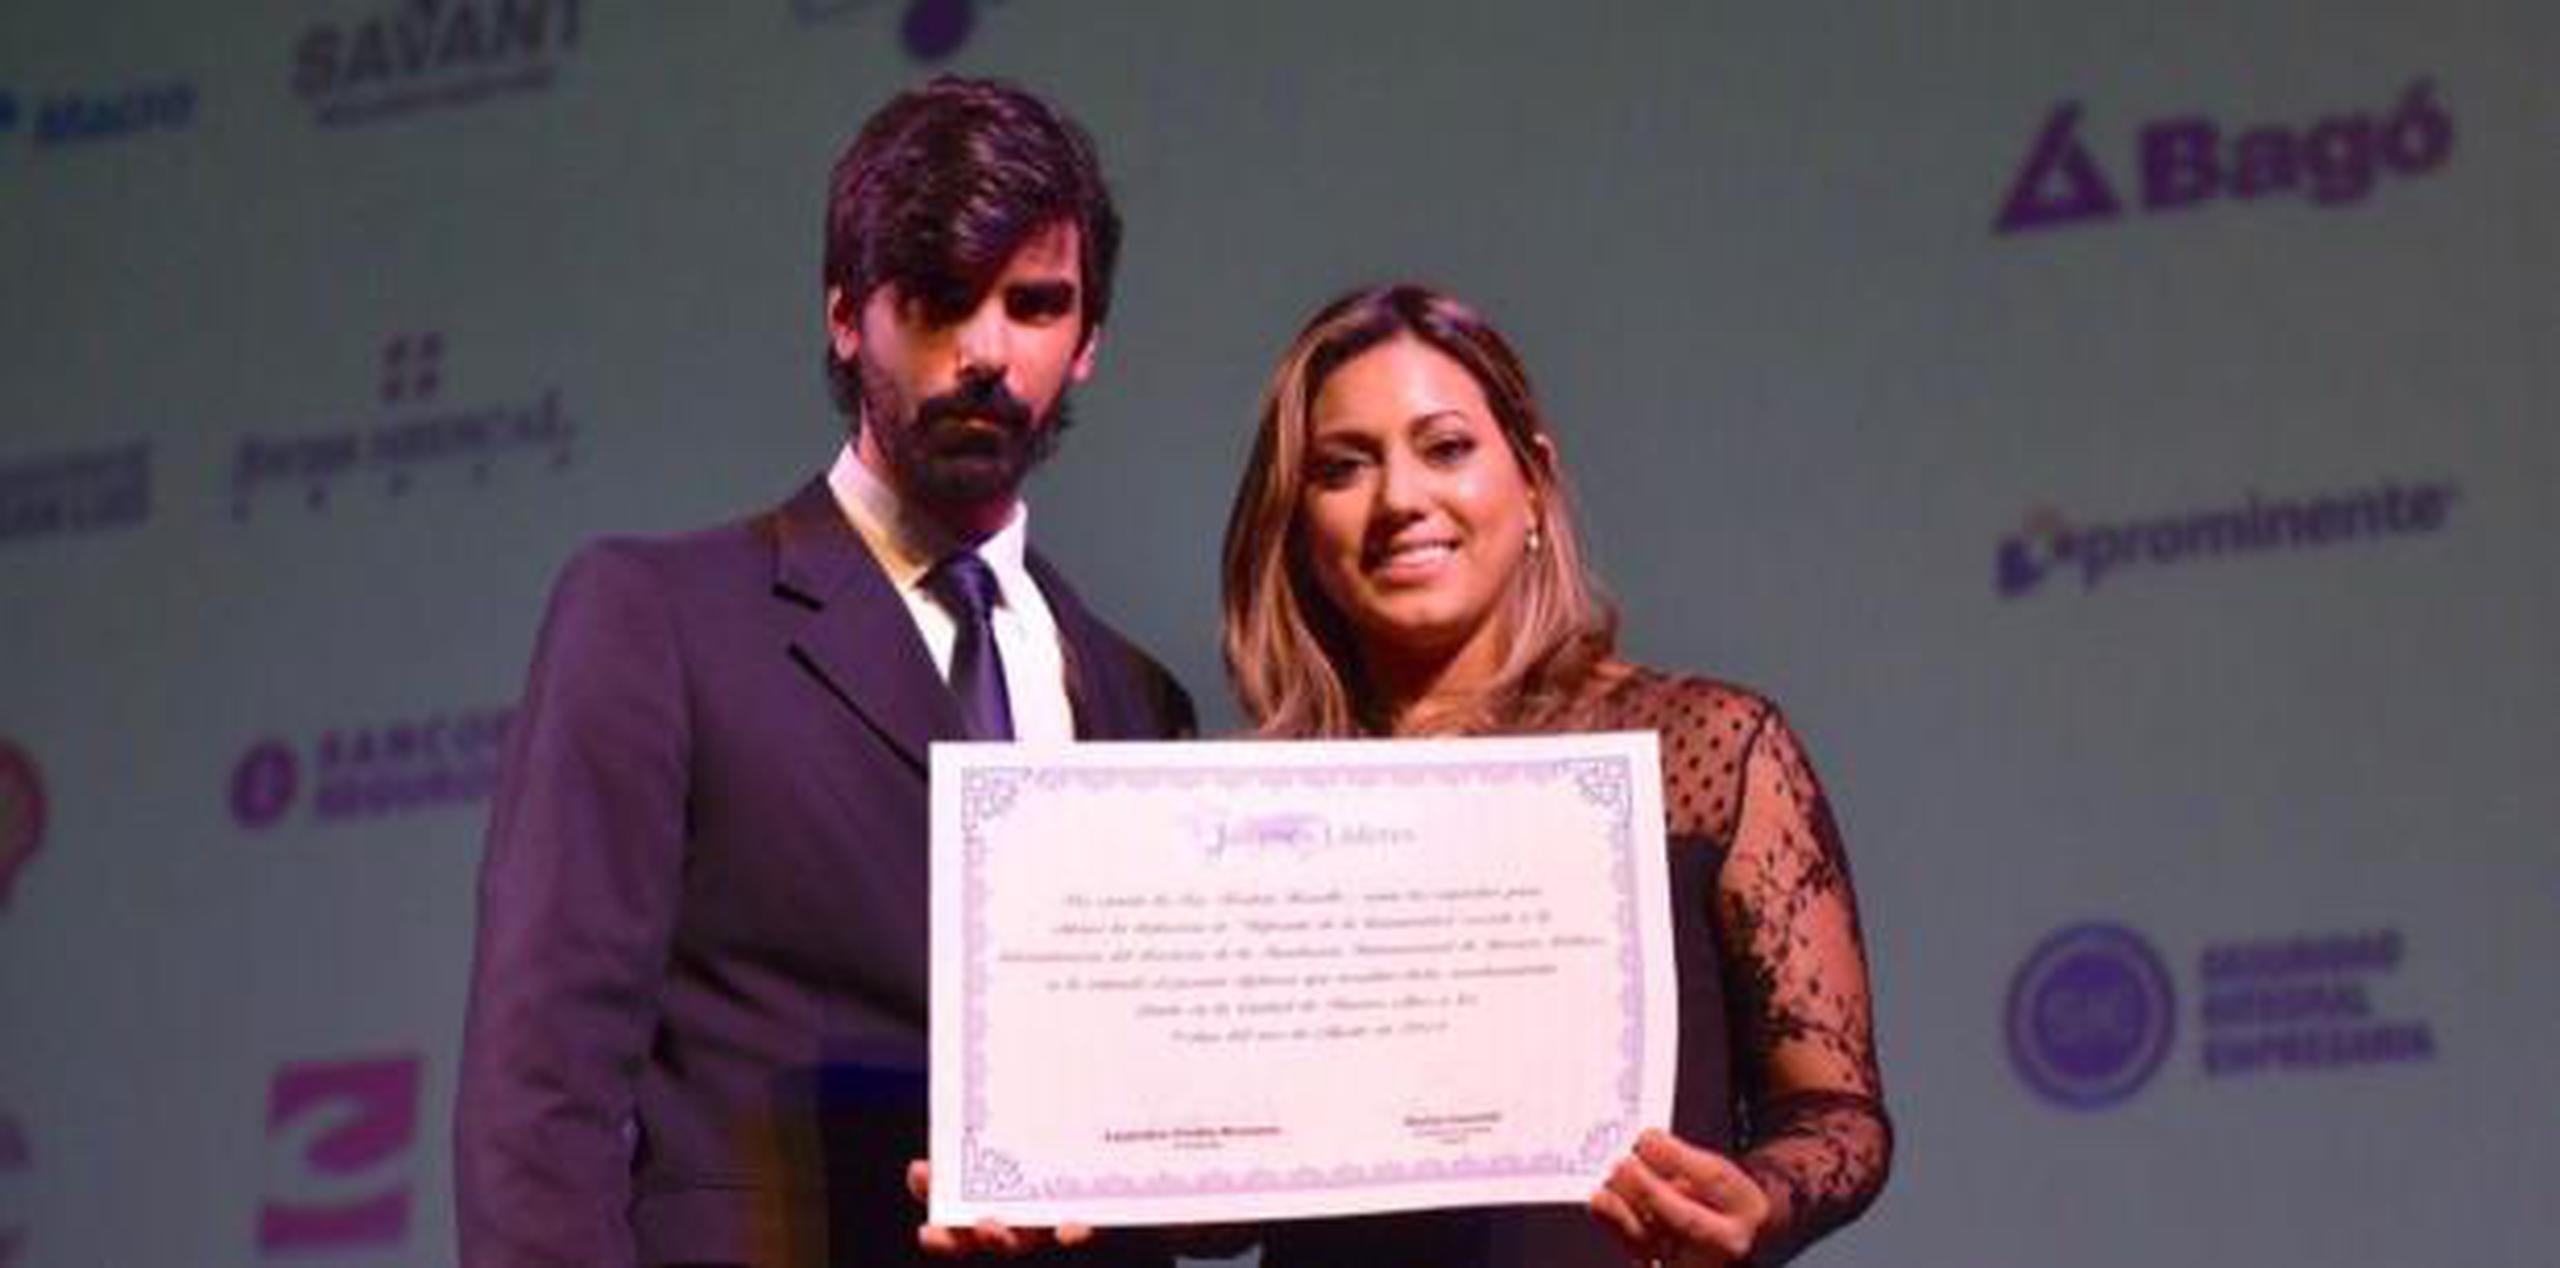 Rosselló junto al presidente de la Fundación Internacional Jóvenes Líderes, Leandro Viotto Romano (Suministrada)